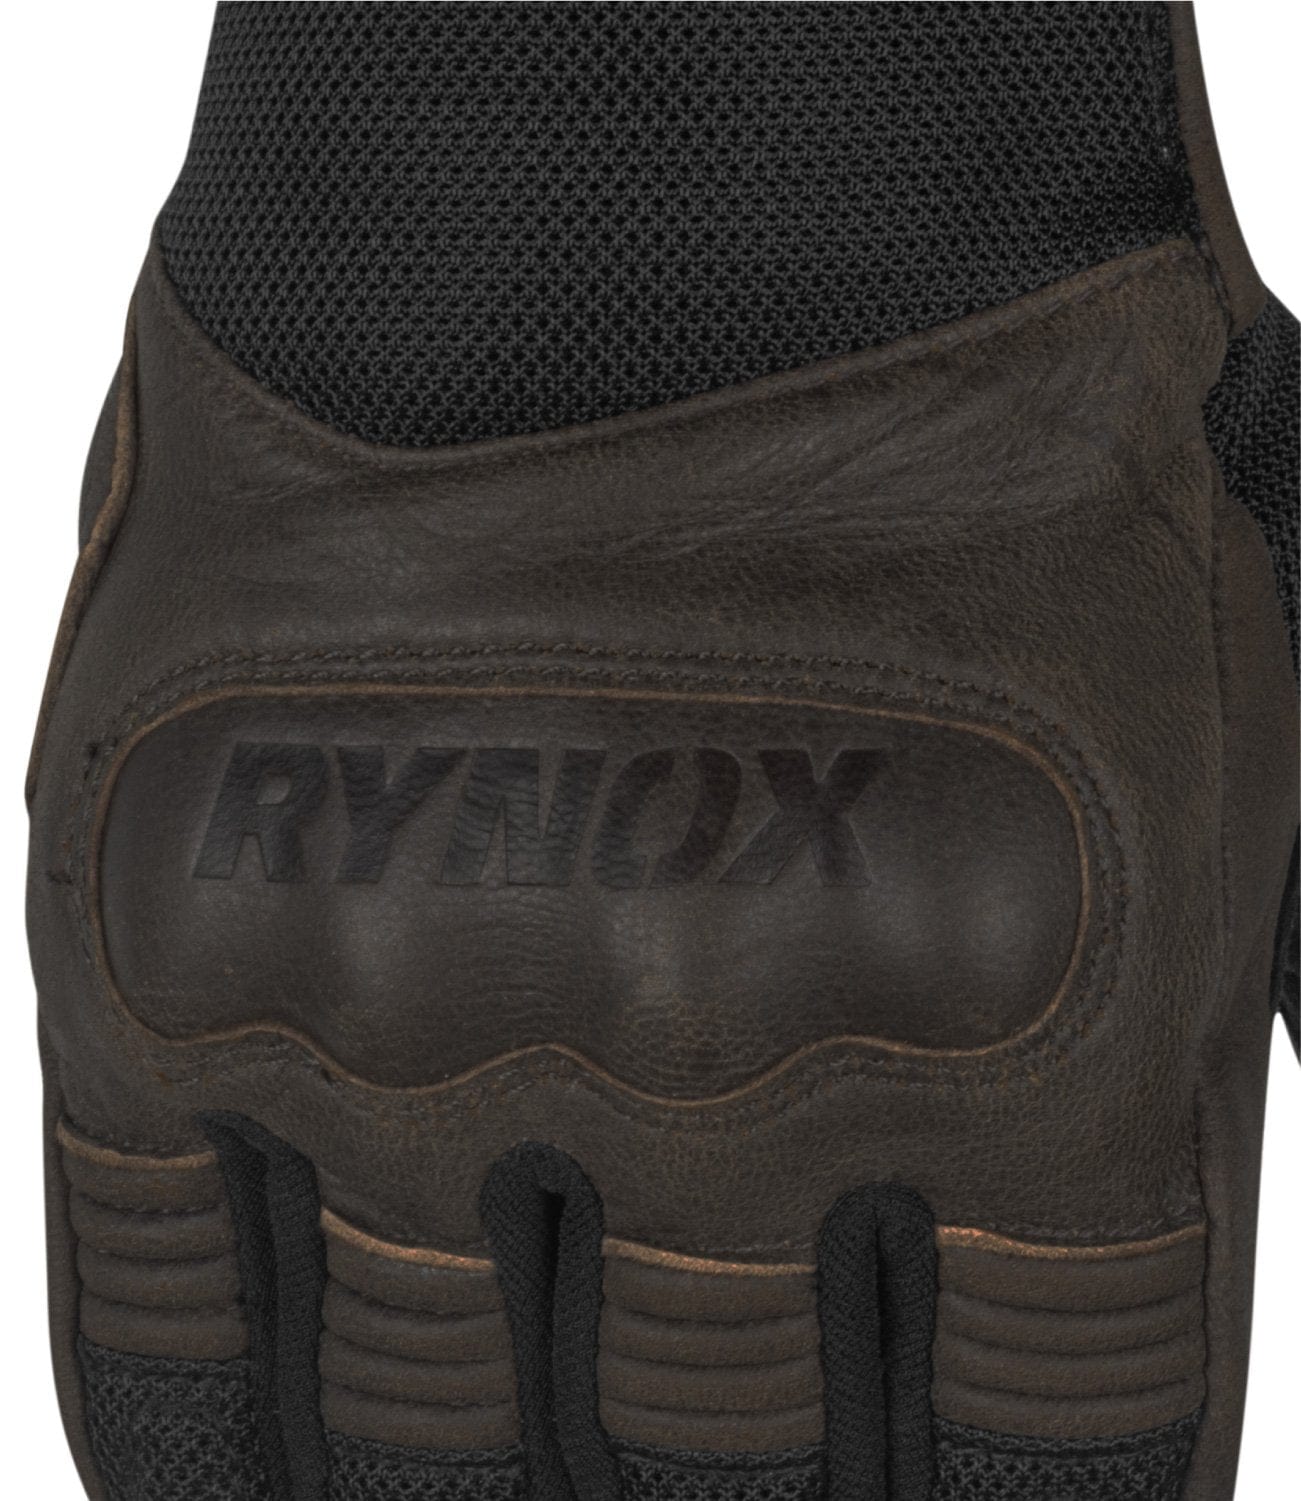 Rynox Urban Gloves Brown - Destination Moto